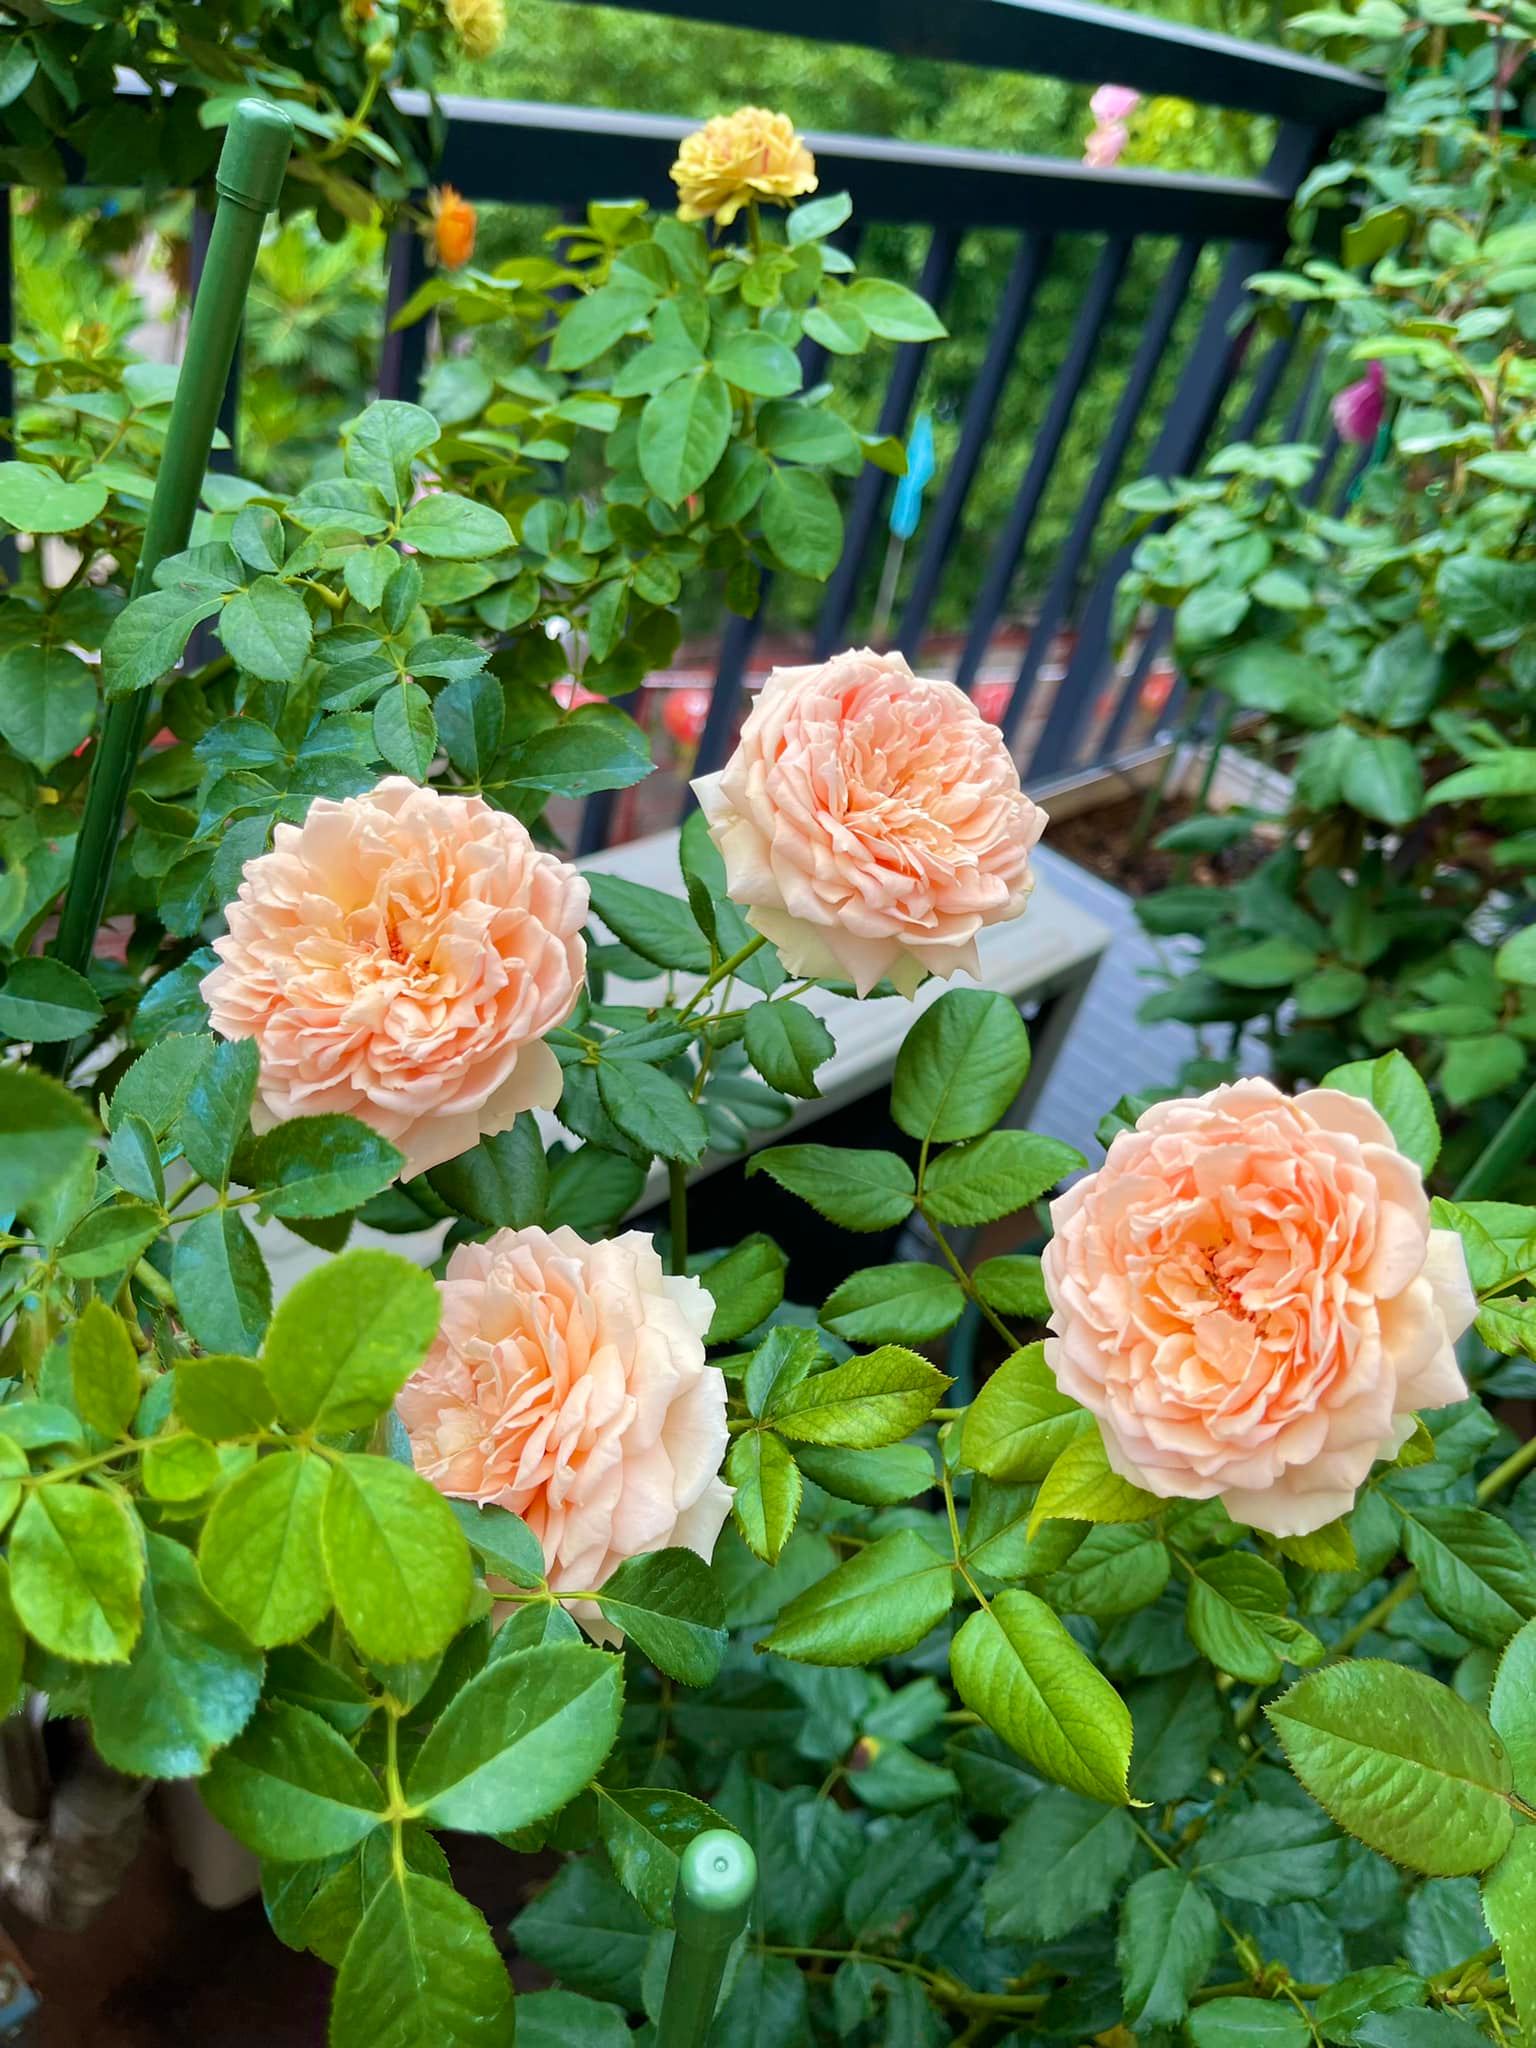 Khu vườn hoa hồng đẹp ngây ngất trên sân thượng ở TP HCM - Ảnh 13.